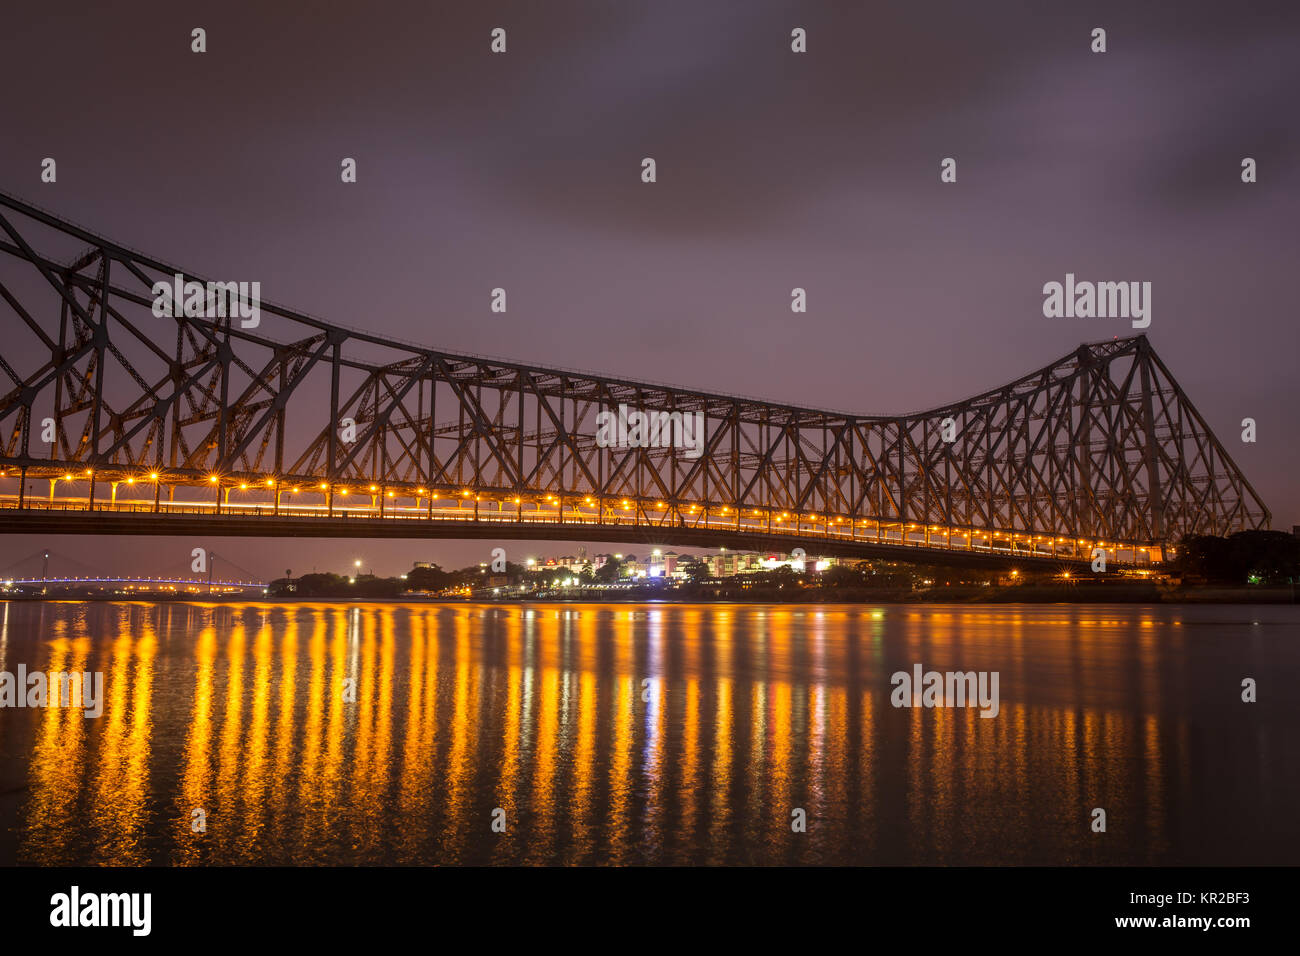 Howrah Bridge - l'historique pont en porte-à-faux sur le fleuve Hooghly durant la nuit à Kolkata, Inde Banque D'Images